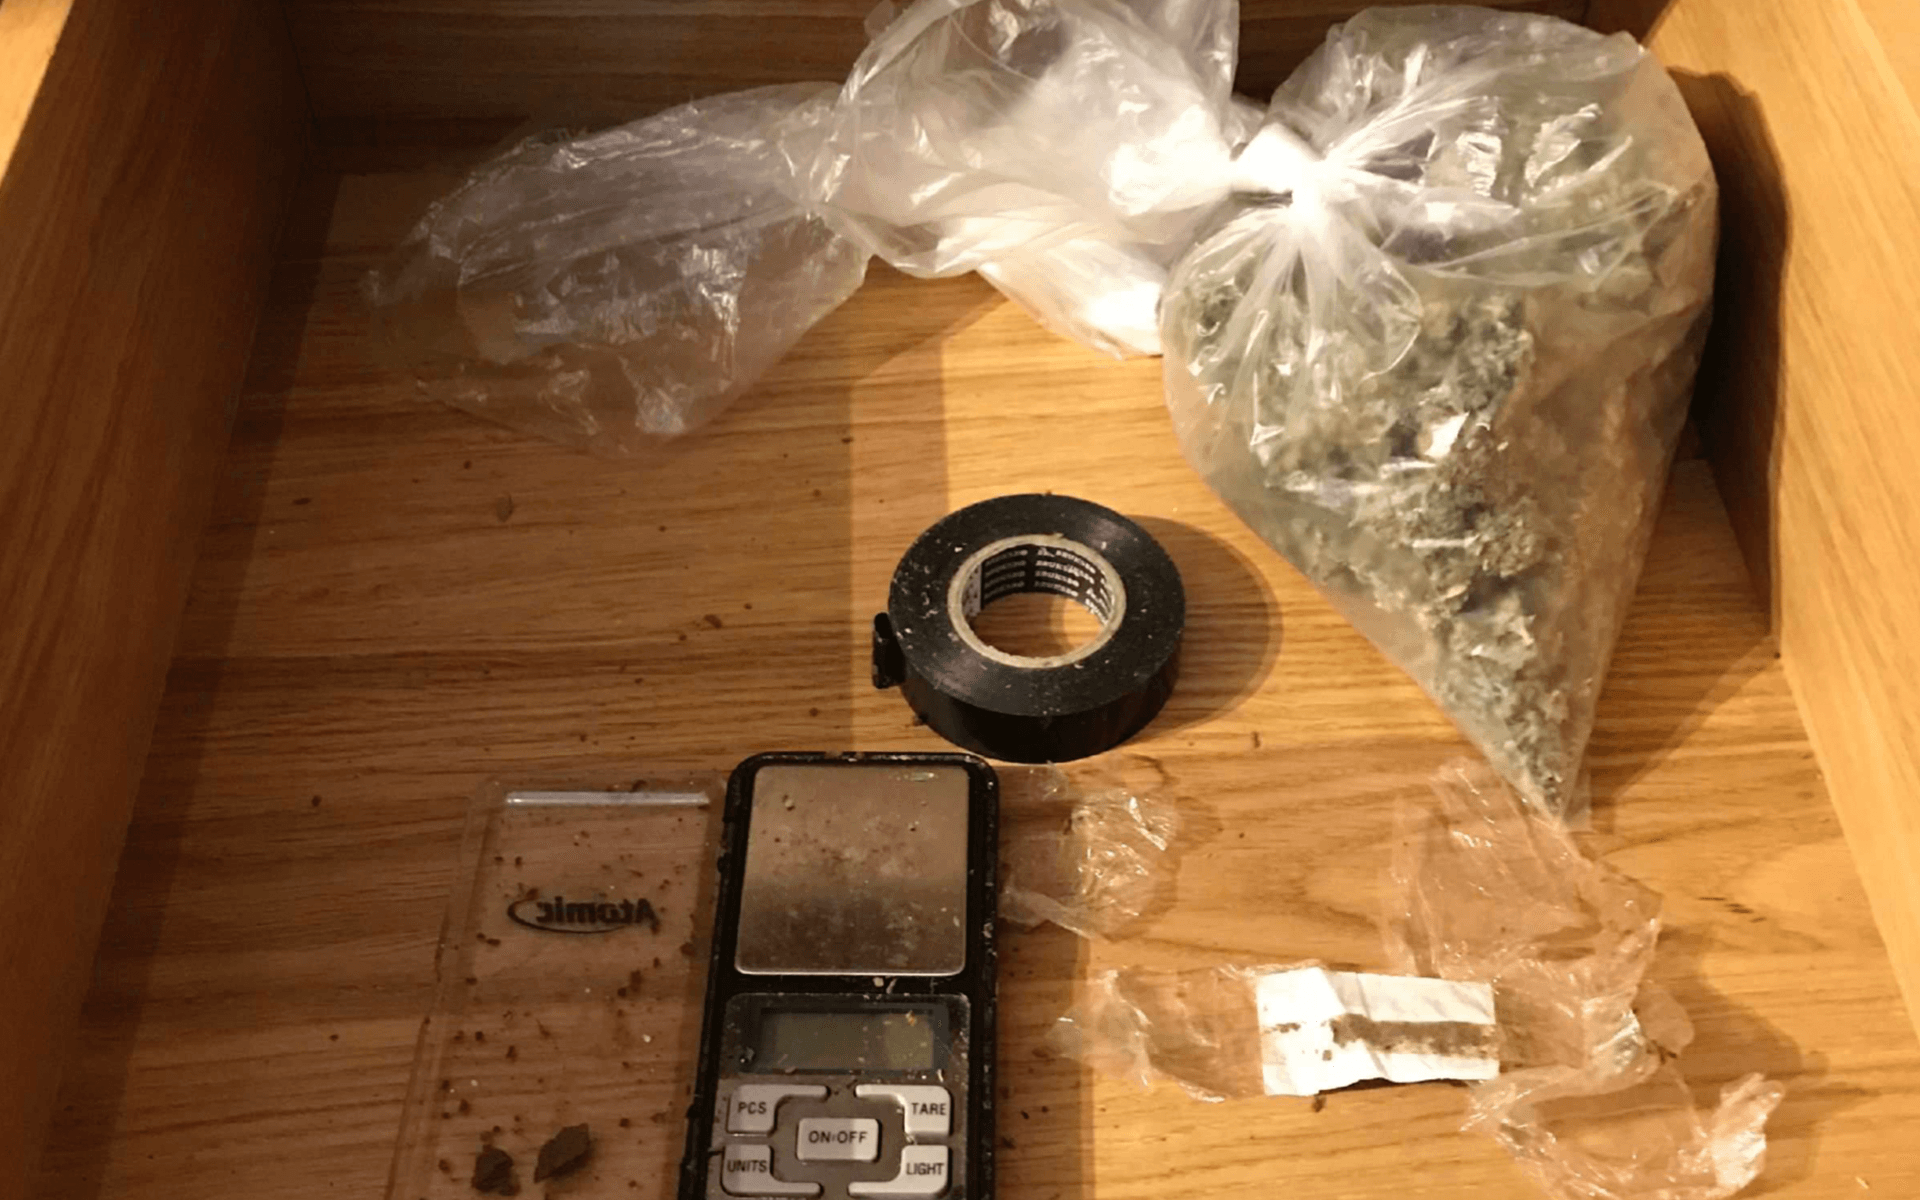 Lådan polisen fann visade sig innehålla bland annat en våg med rester av cannabis på. Lådan innehöll också en lite större påse med marijuana och pressad kokain.